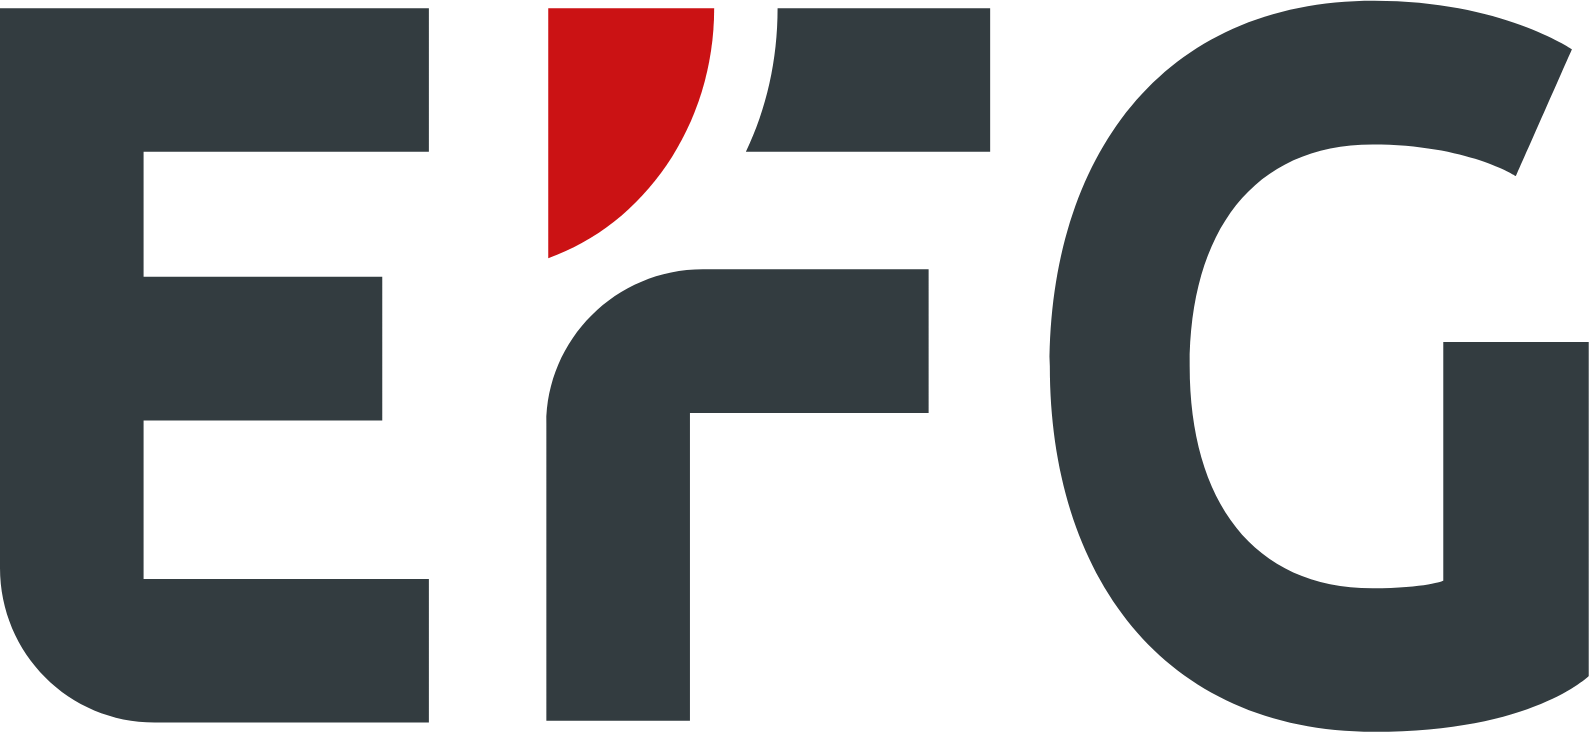 EFG International logo (transparent PNG)